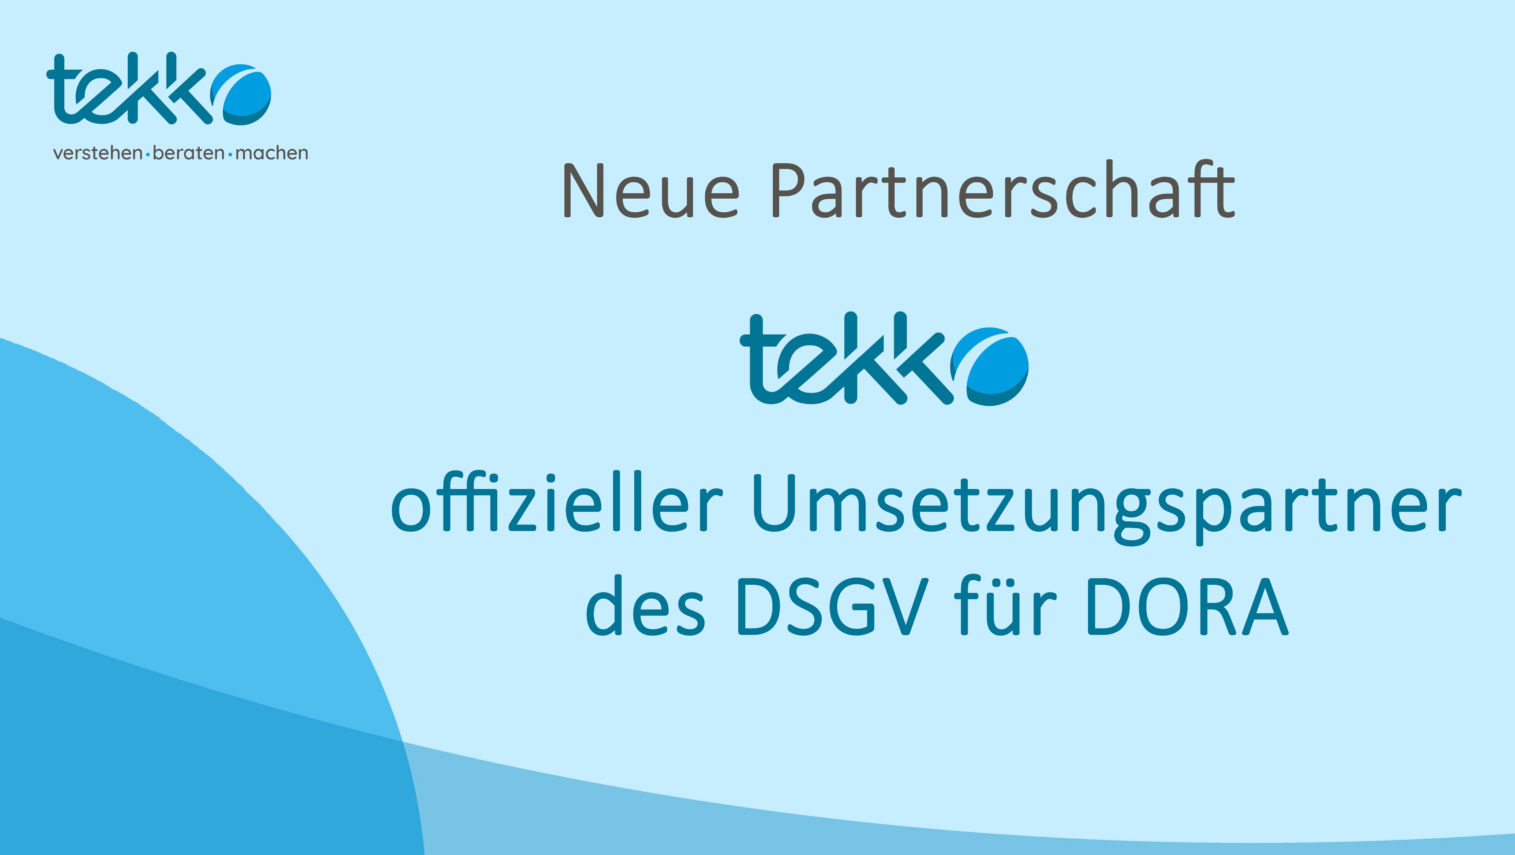 tekko ist offizieller Umsetzungspartner des Deutschen Sparkassen- und Giroverbands für DORA-Implementierung